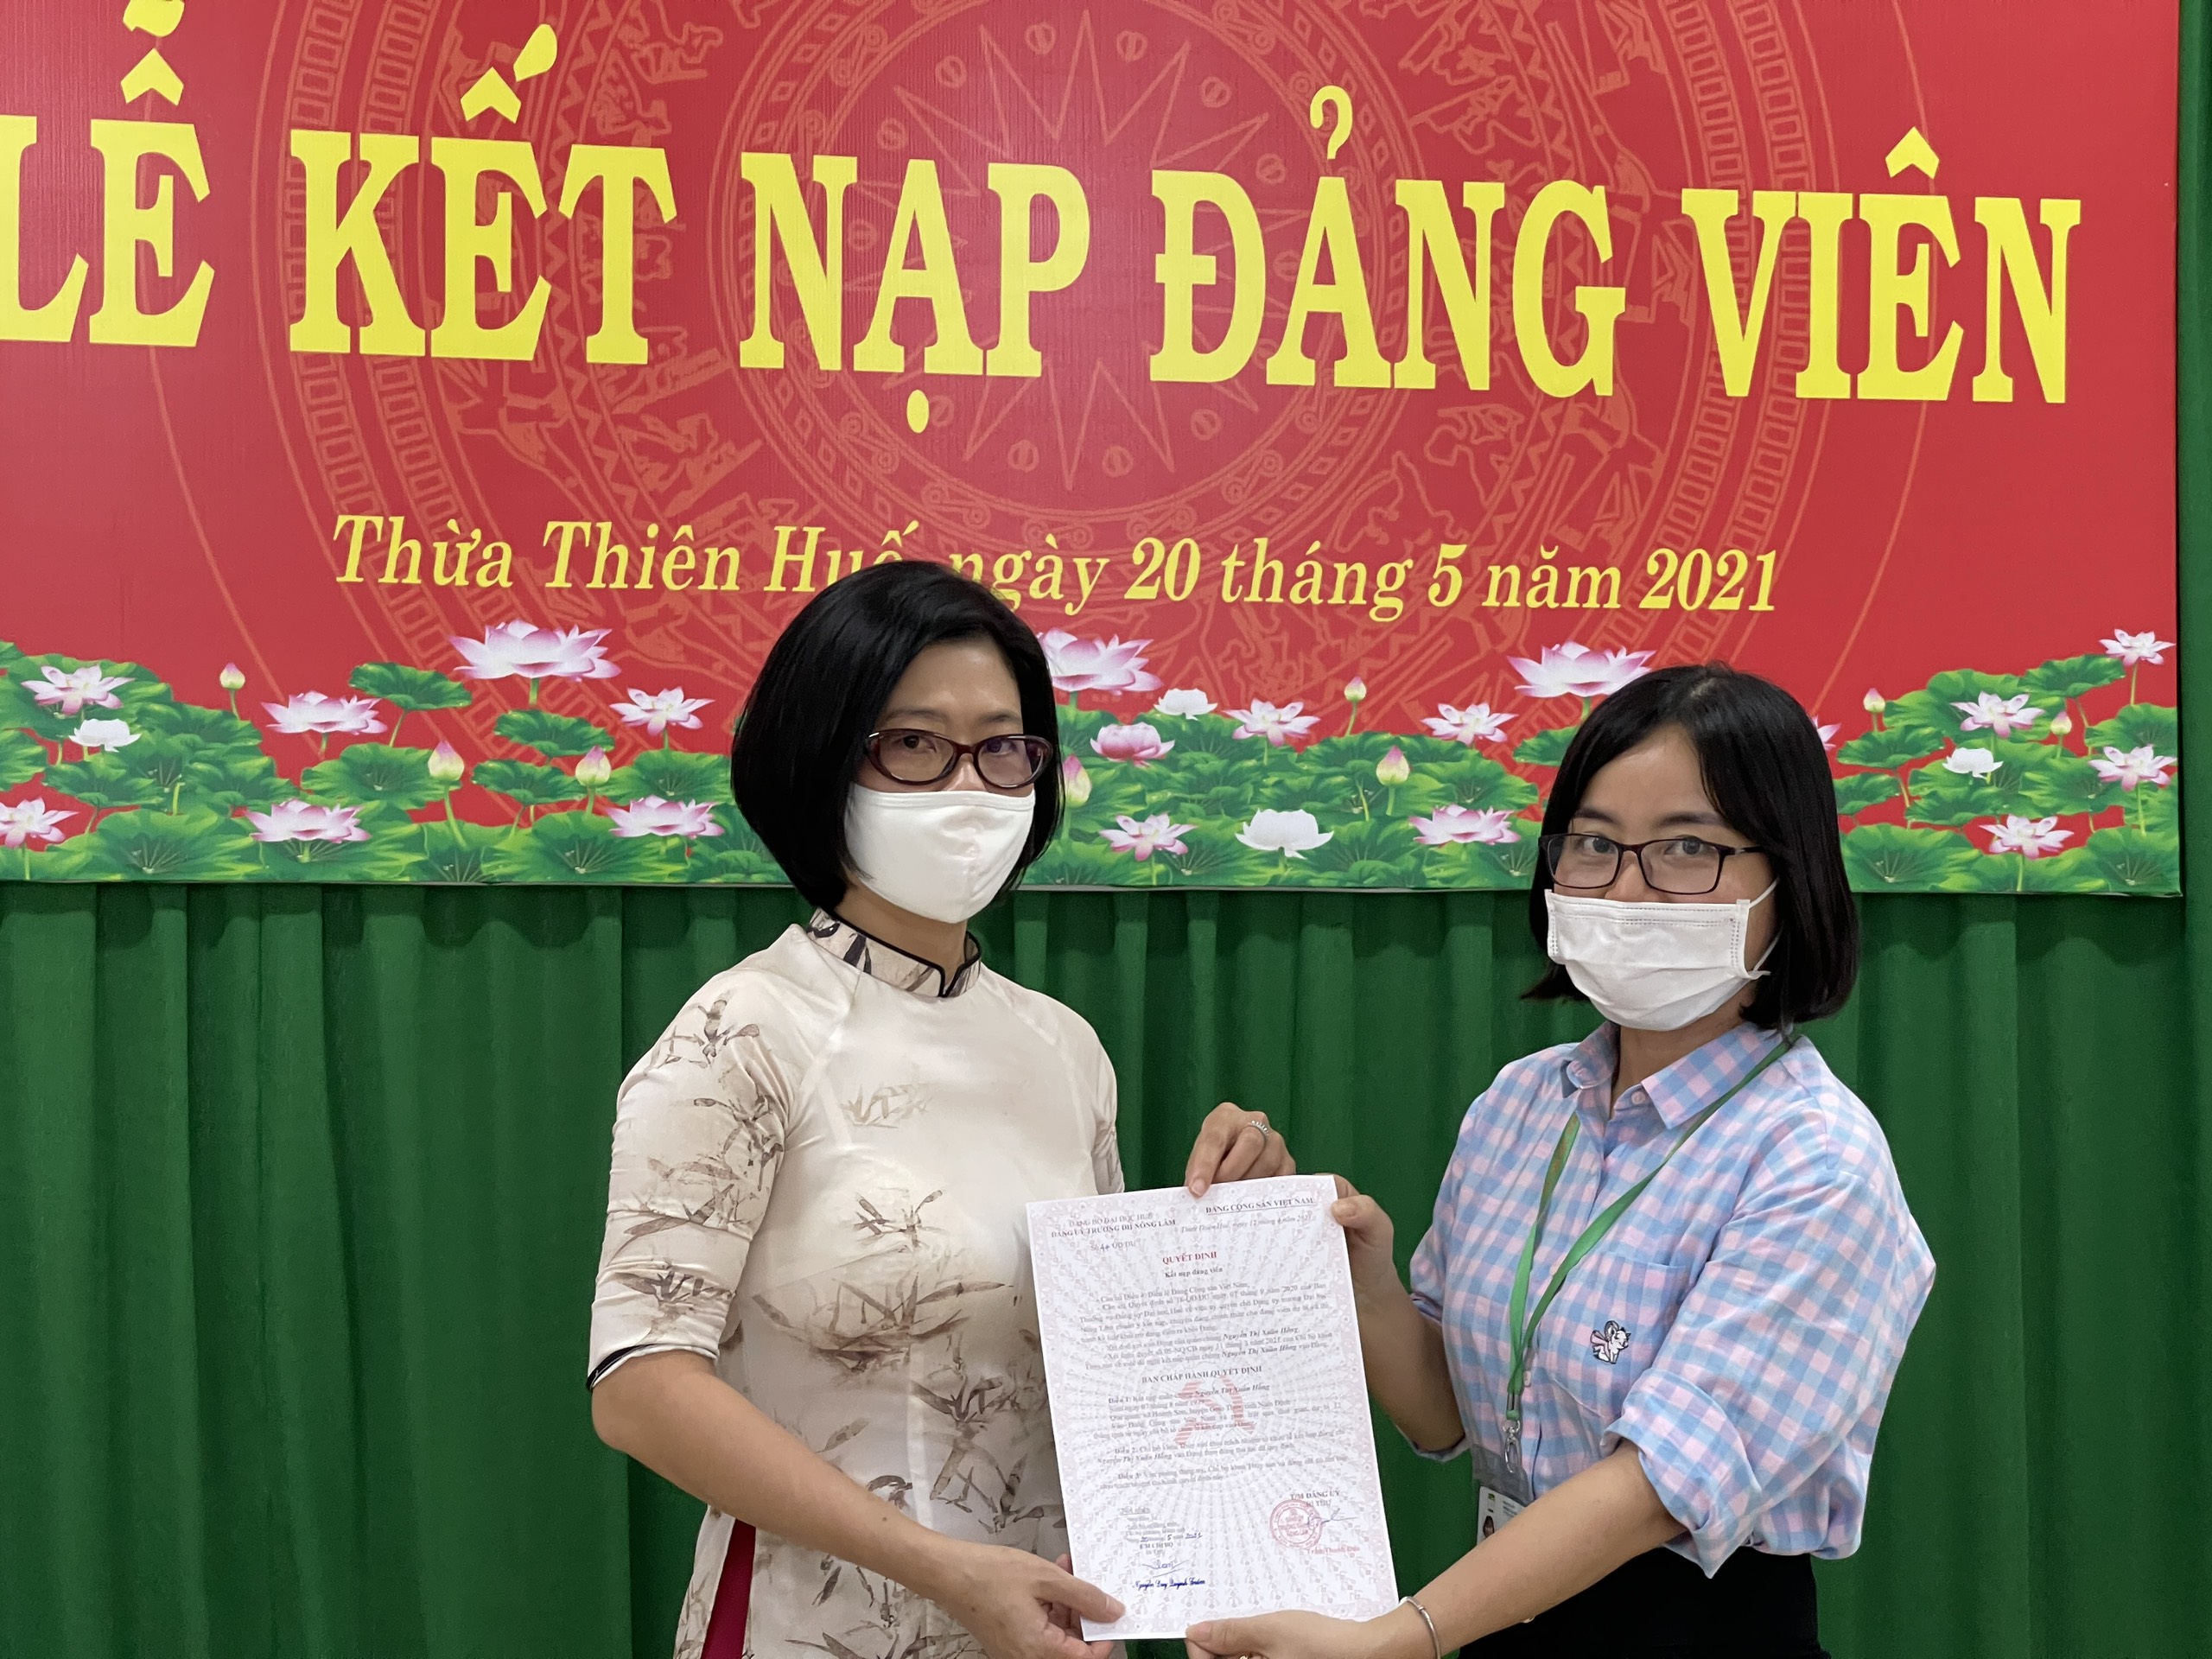 Đồng chí Nguyễn Duy Quỳnh Trâm, bí thư chi bộ, trưởng khoa Thủy sản trao quyết định kết nạp Đảng viên mới